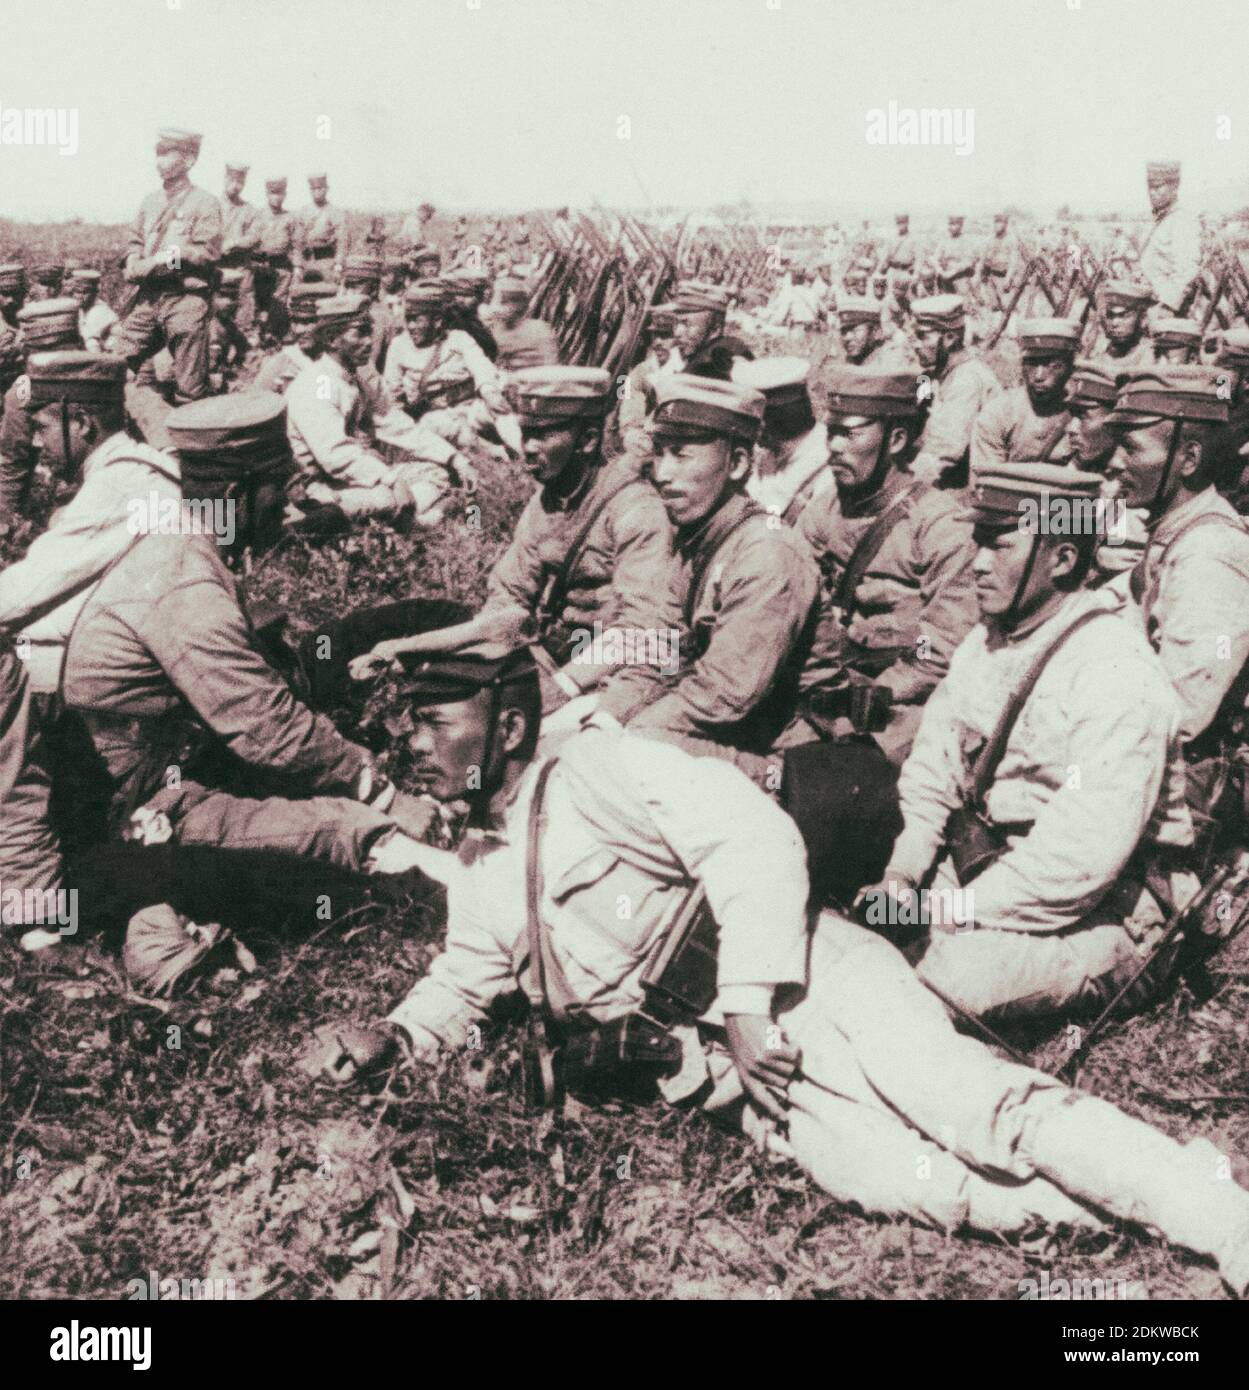 Japanisch (9. Reg. 4th Div.) bereit für den Kampf, wartet auf Befehle für den Fortschritt. Belagerung von Port Arthur. China. 1904 Stockfoto